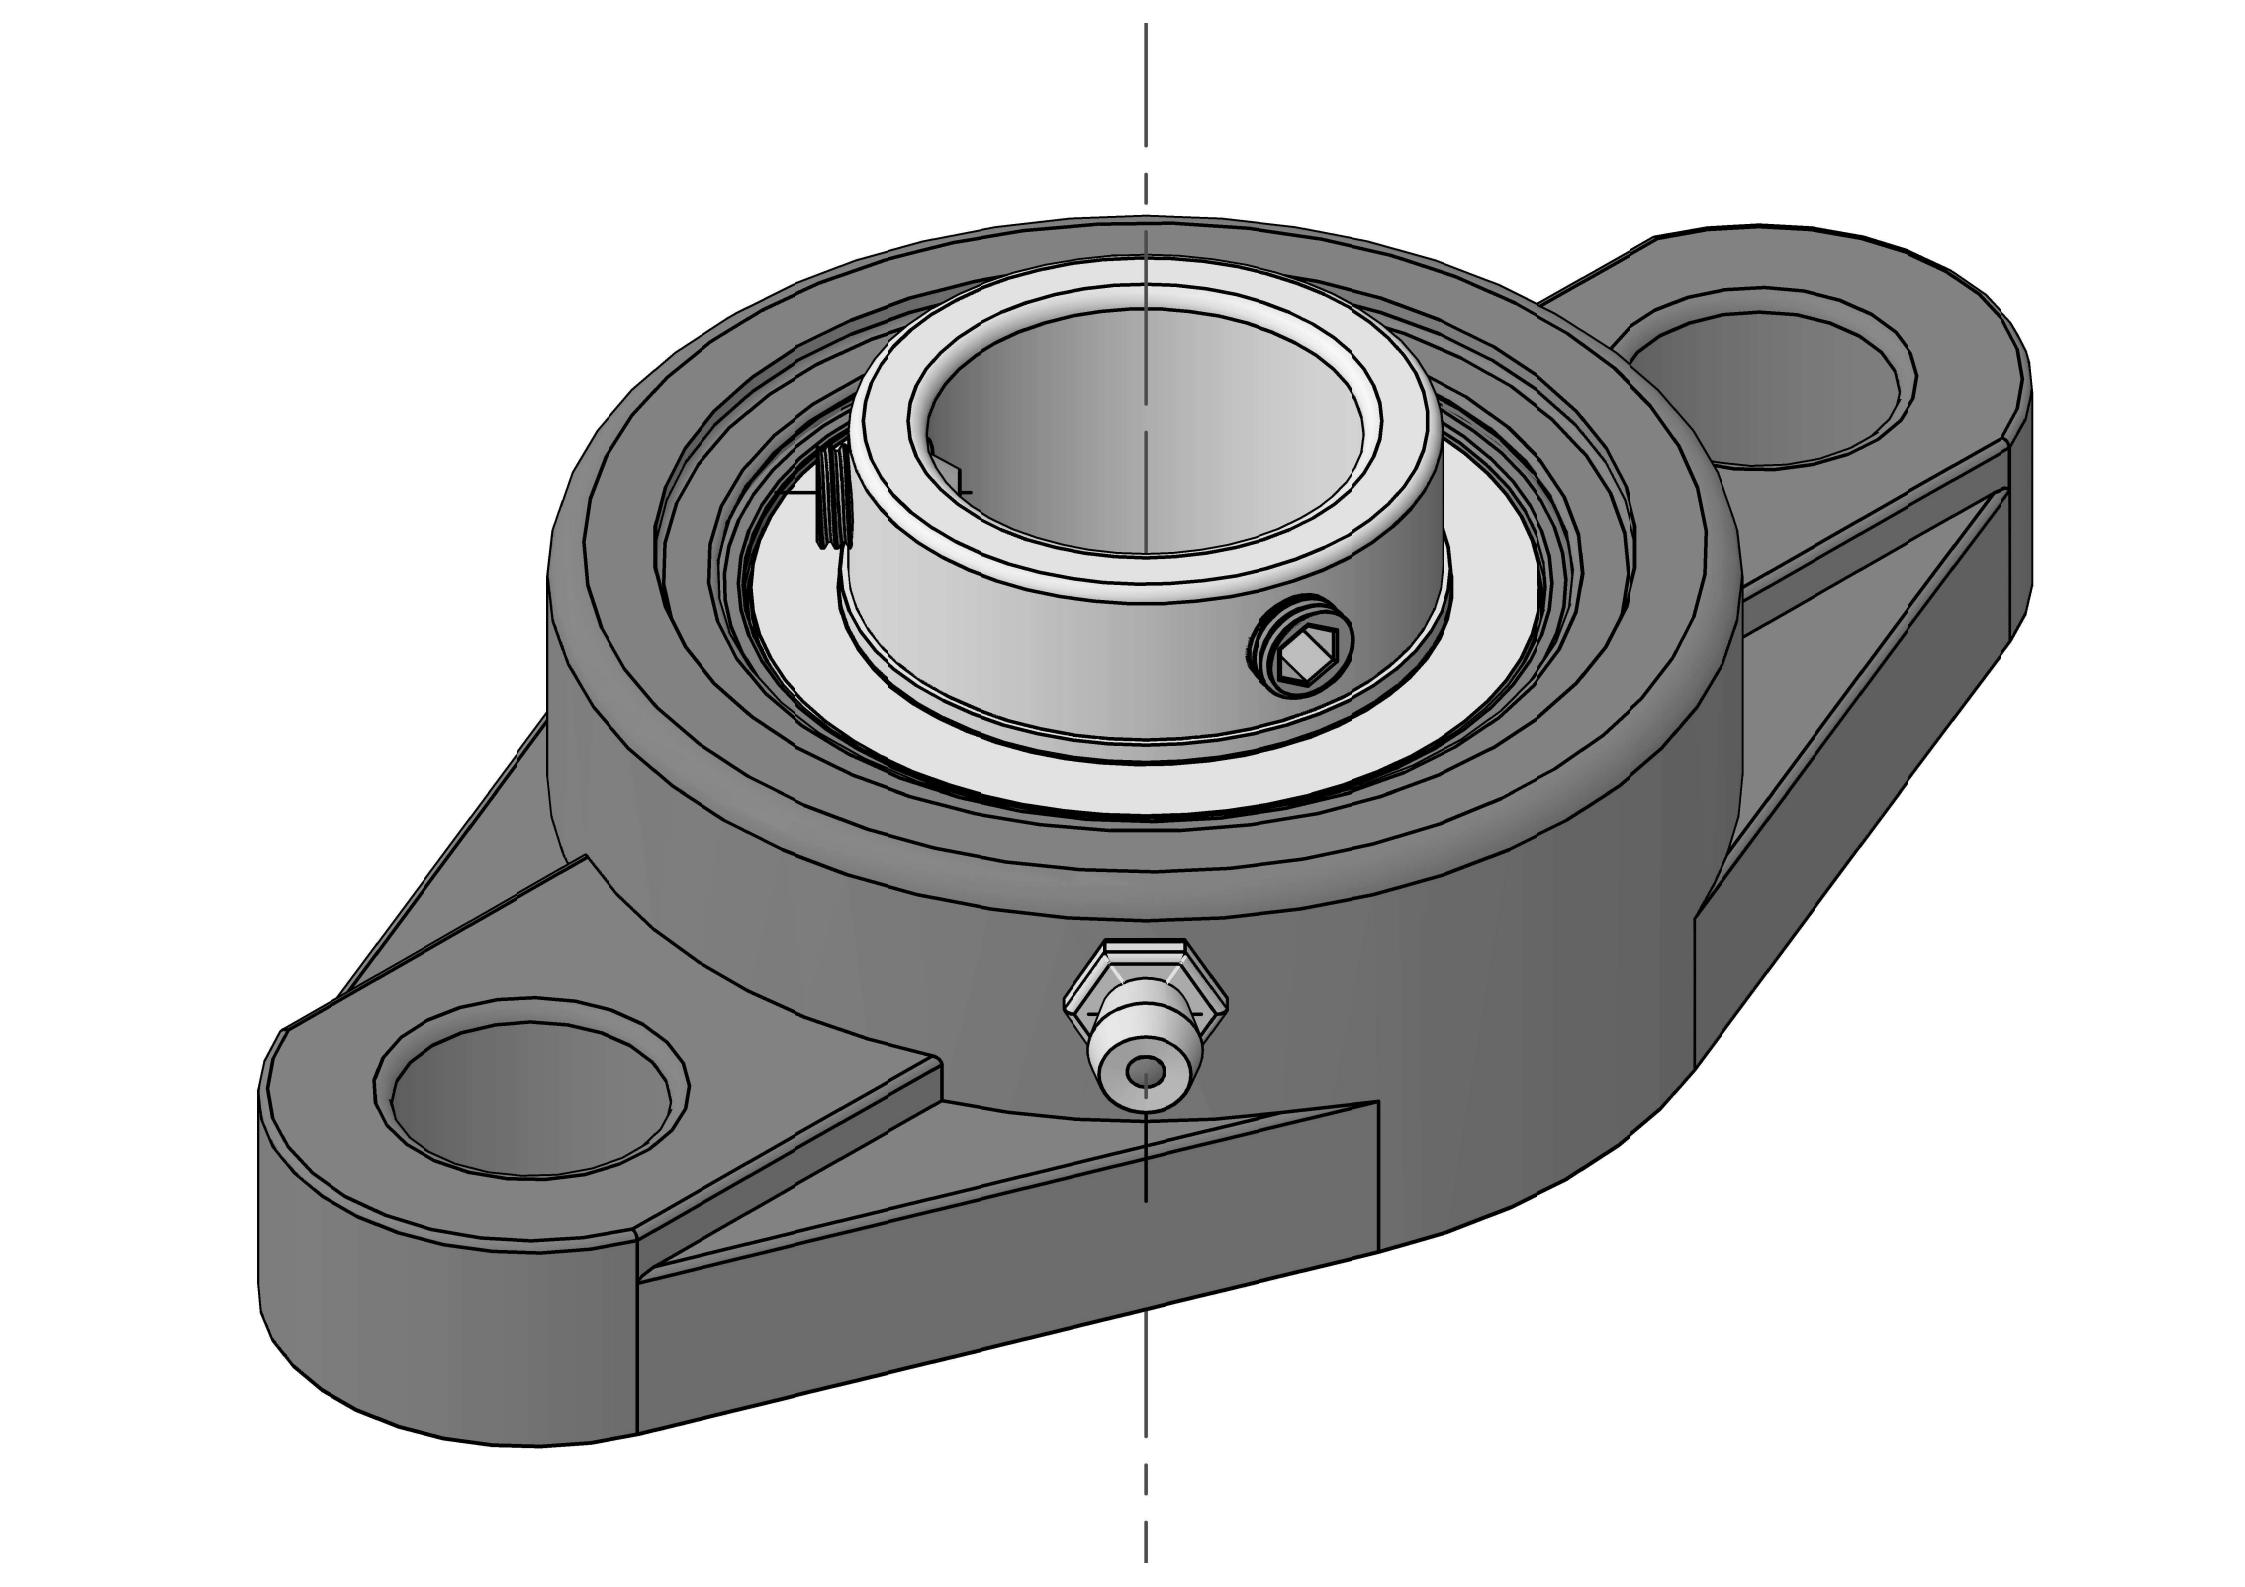 UCFLX10-29 Duha ka Bolt Oval Flange bearing Units nga adunay 1-13 / 16 pulgada nga bore